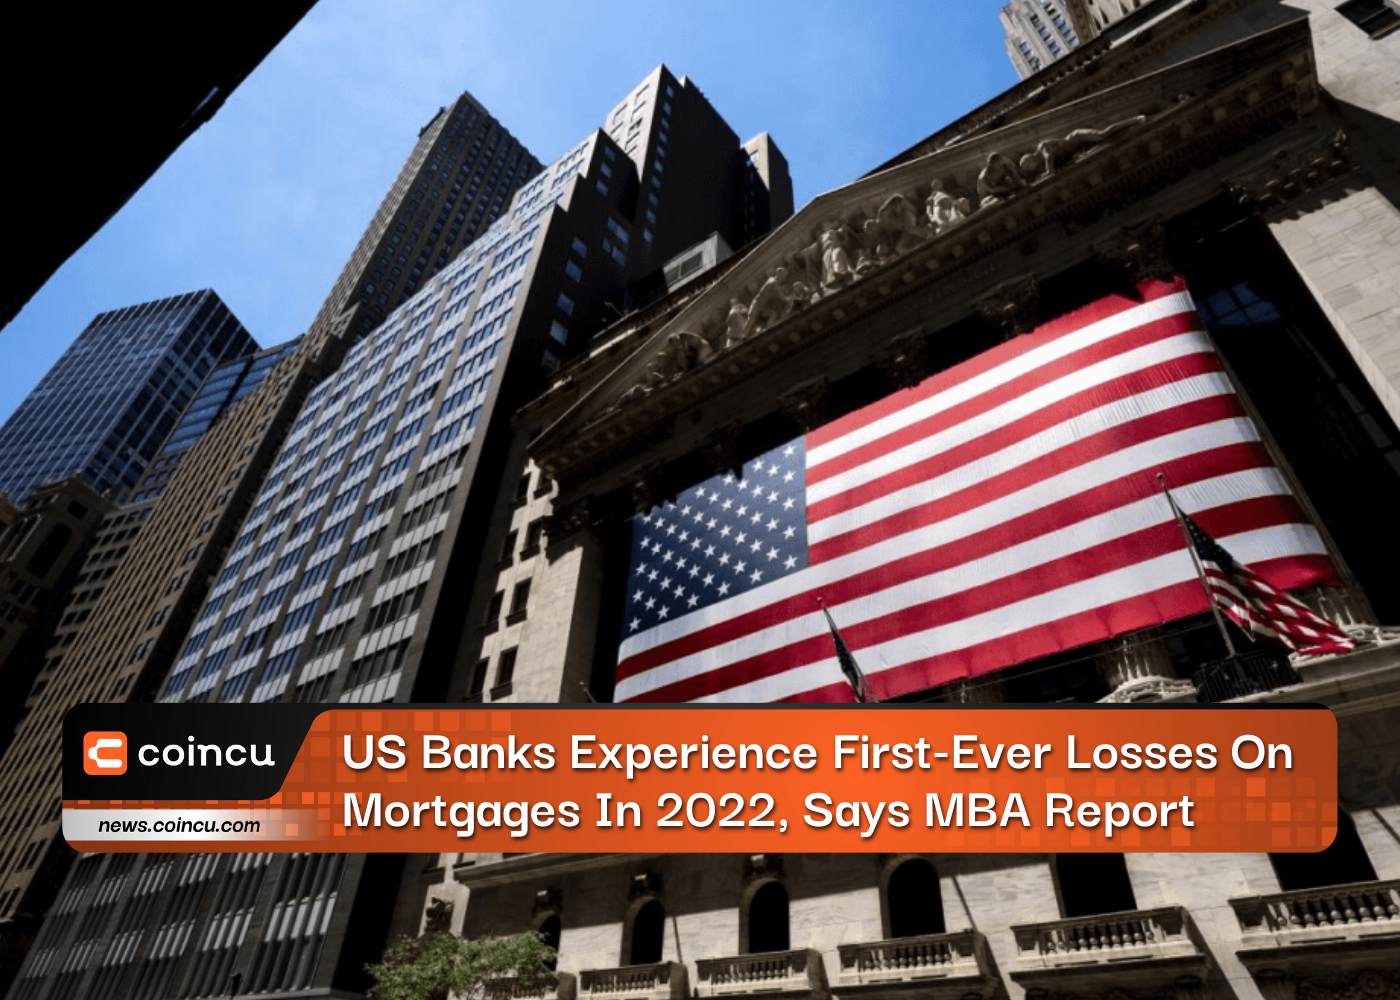 एमबीए रिपोर्ट में कहा गया है कि अमेरिकी बैंकों को 2022 में बंधक पर पहली बार नुकसान का अनुभव होगा